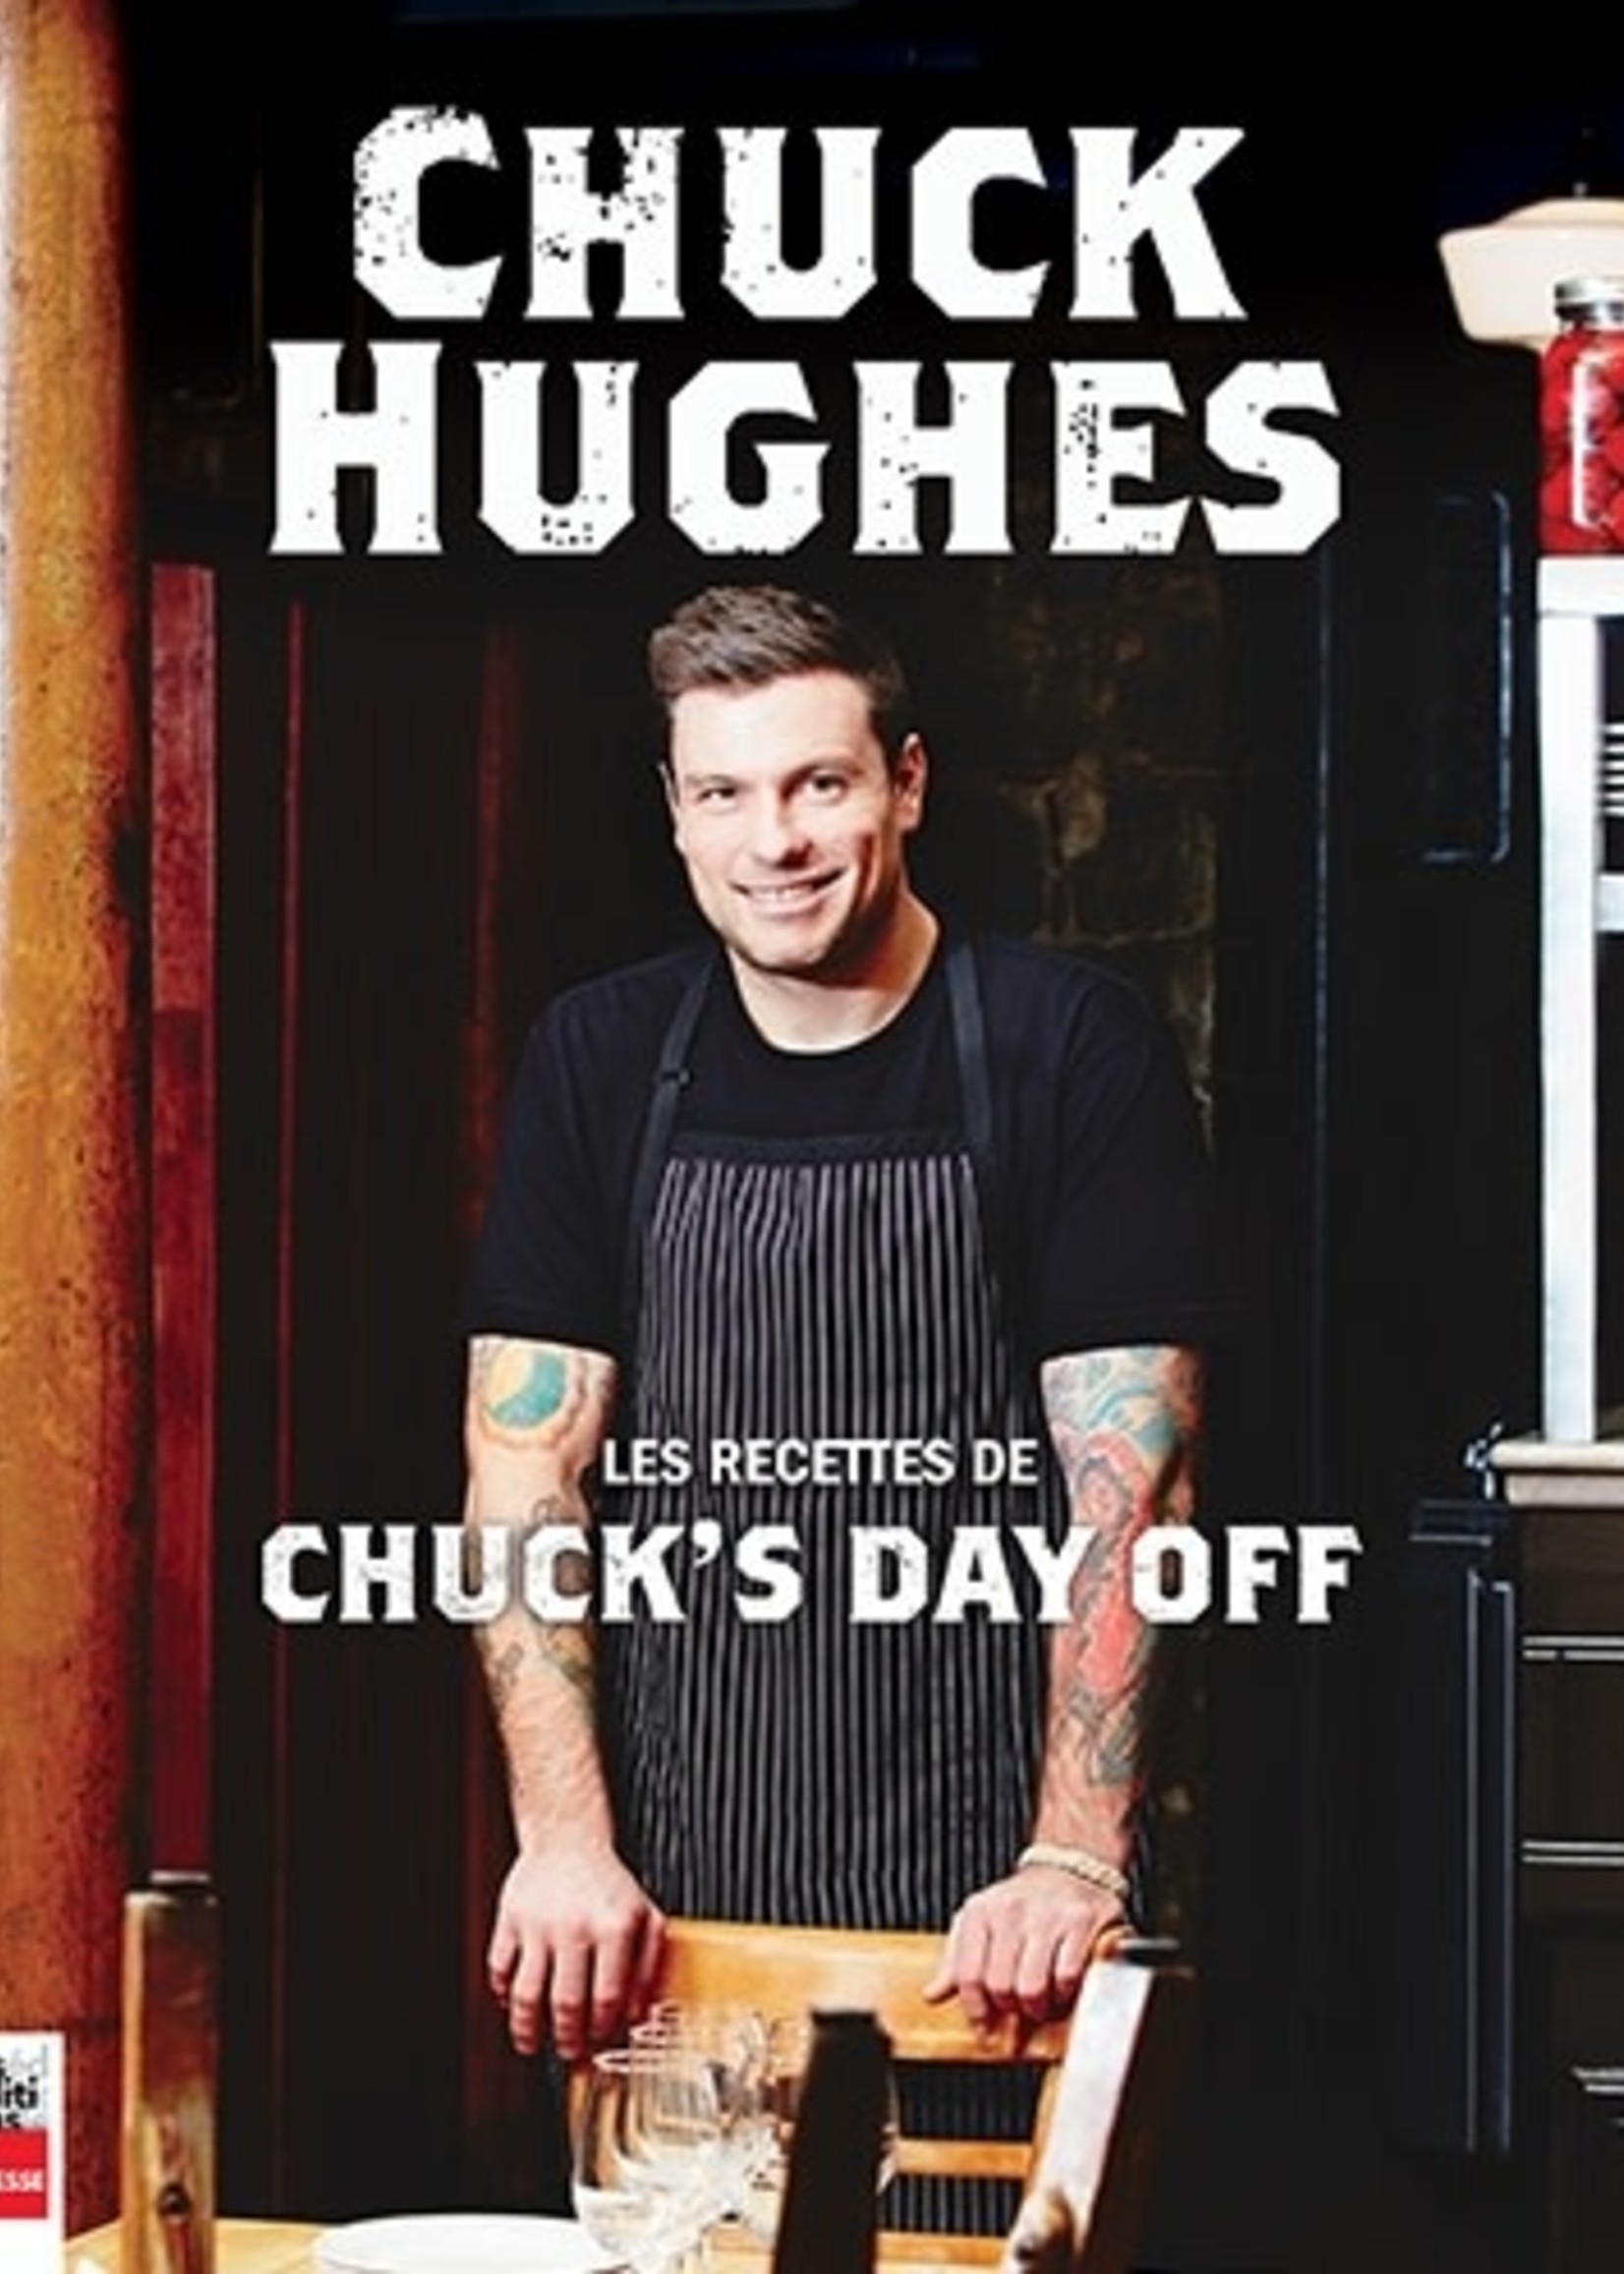 la presse Les recettes de Chuck's day off - Chuck Hughes